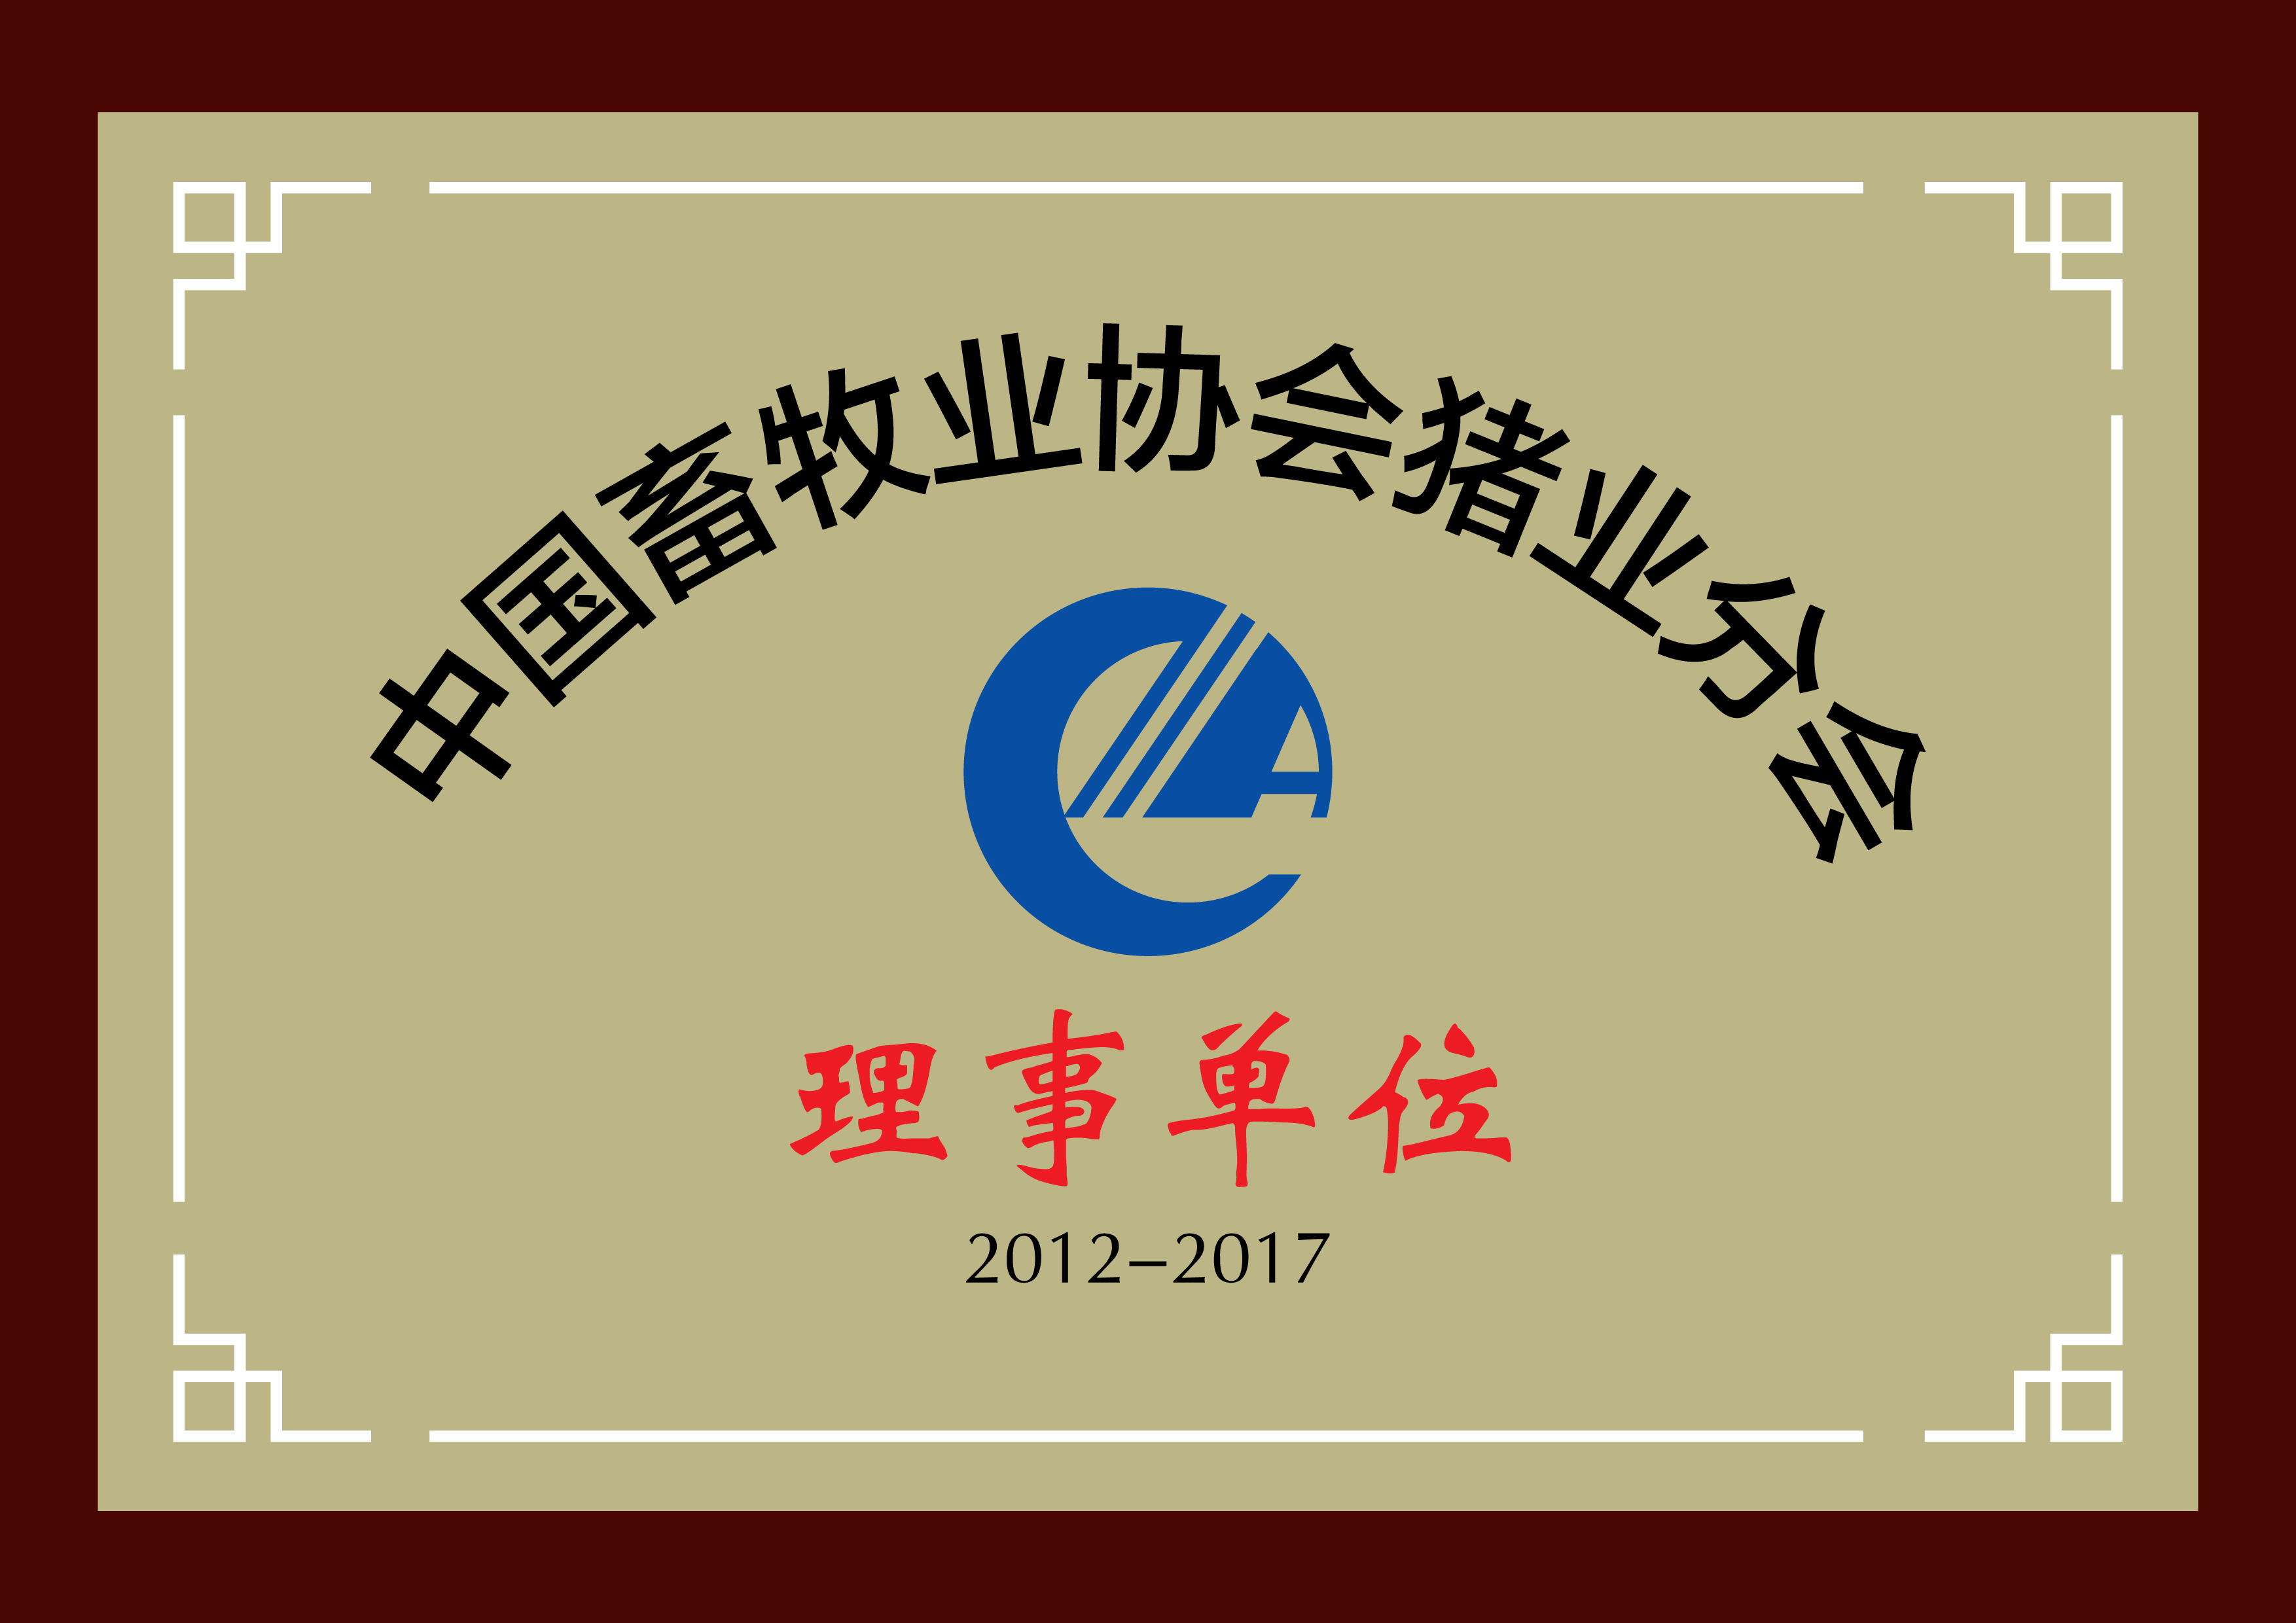 中国畜牧业理事单位